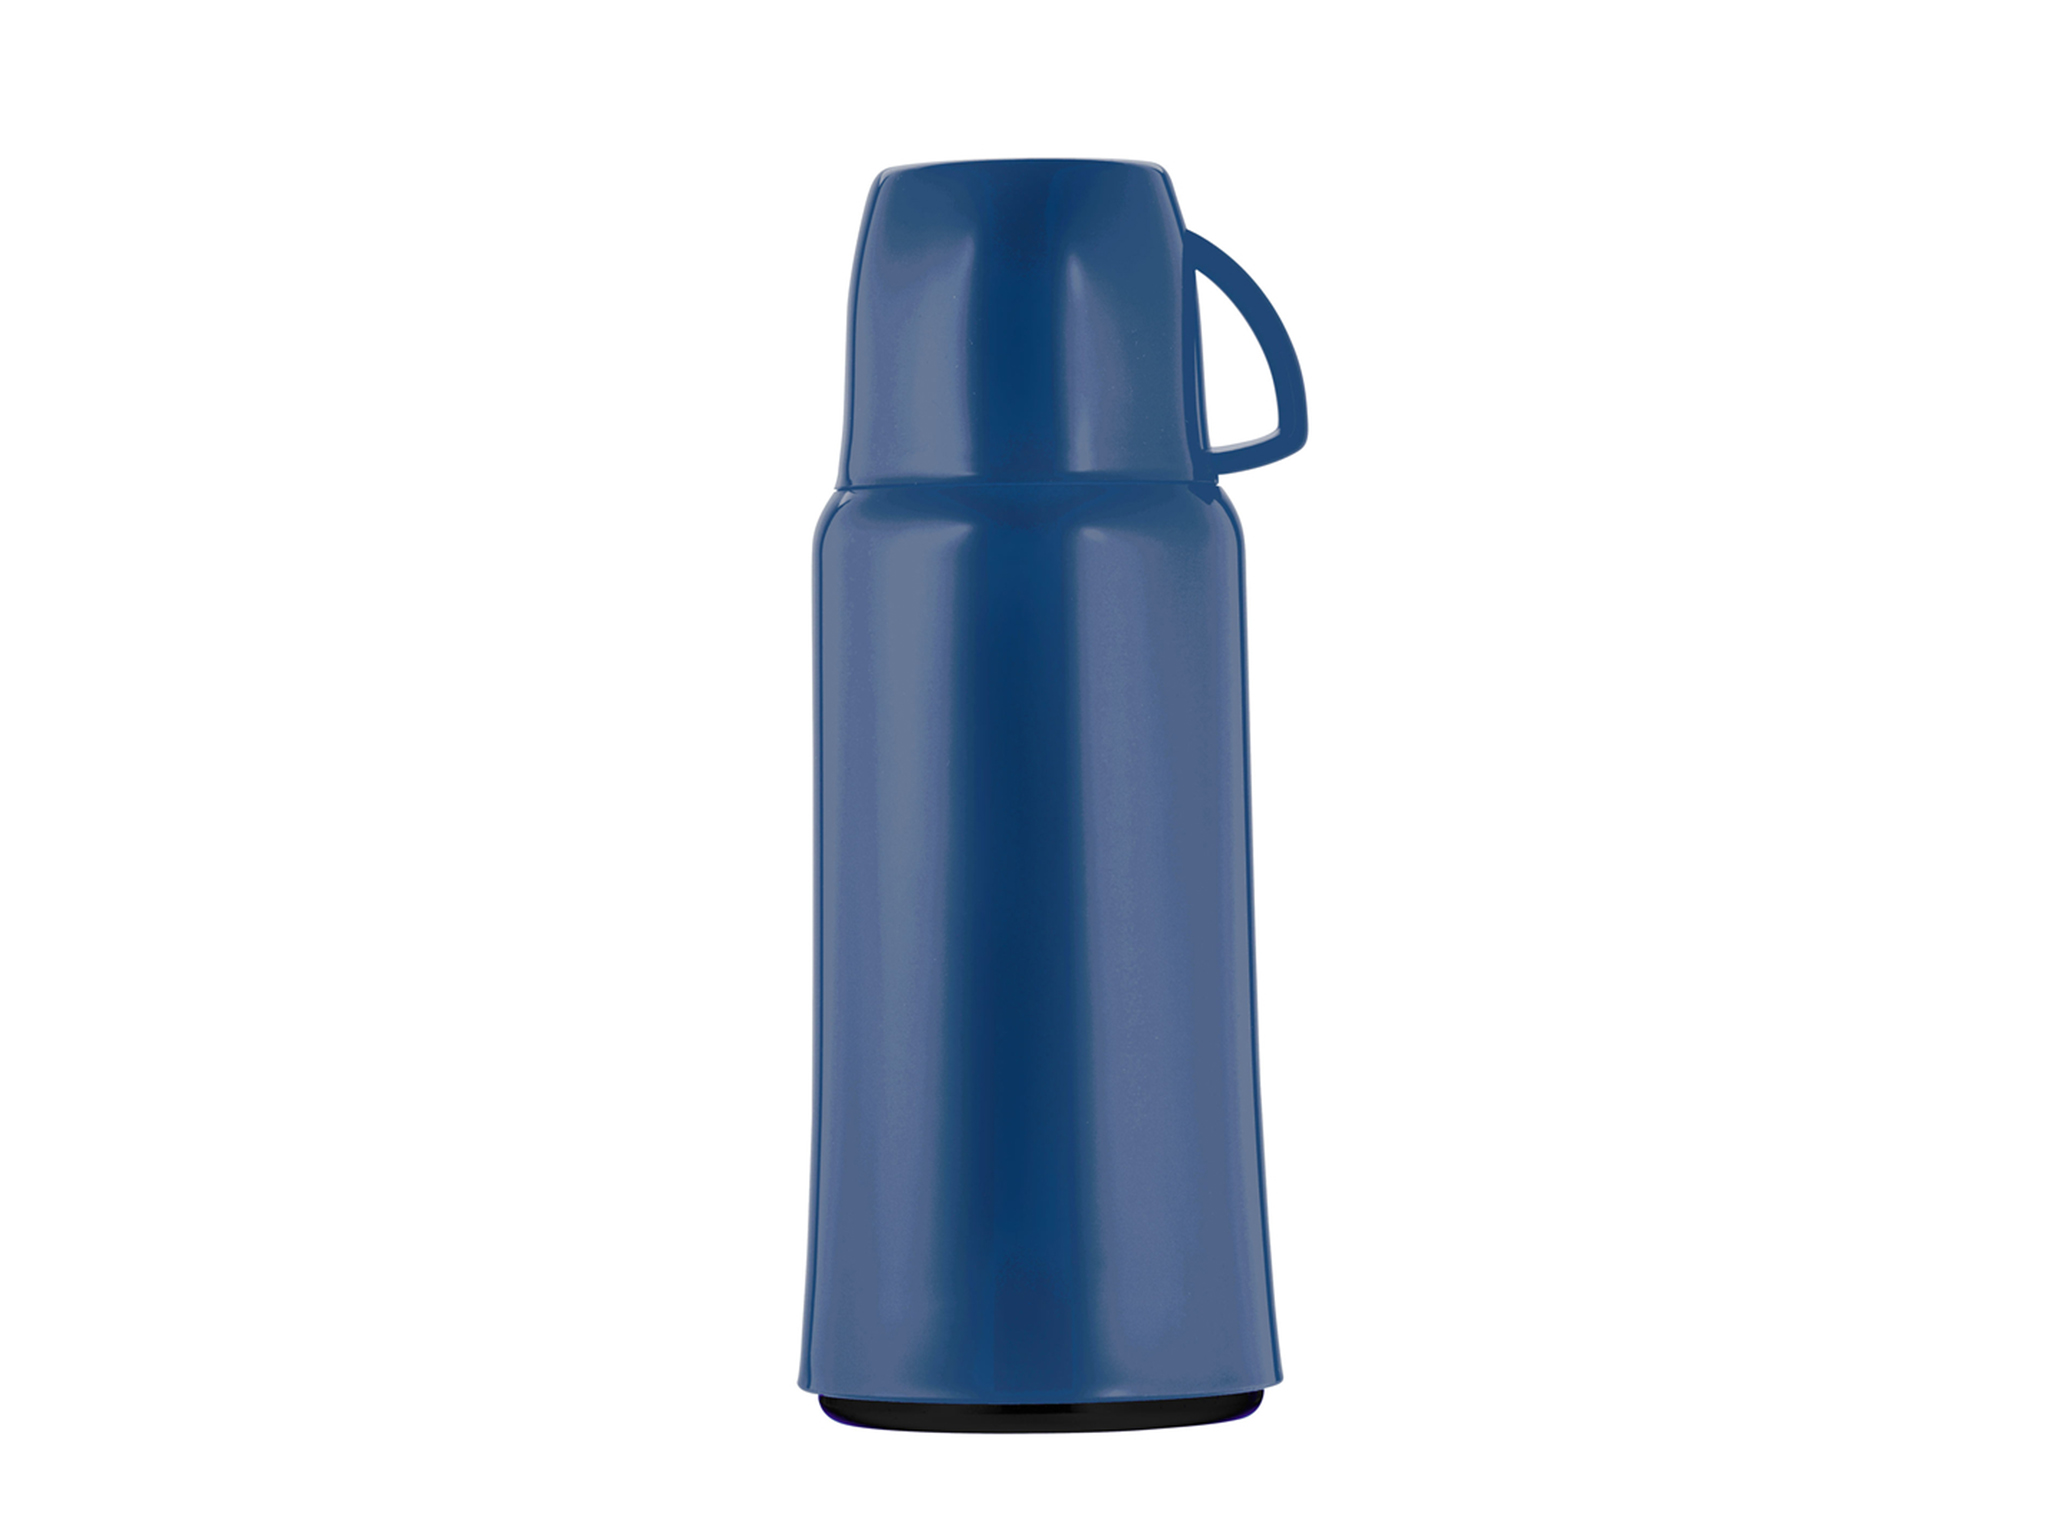 5444-005 - Vacuum flask blue 1.0 L ELEGANCE - Helios